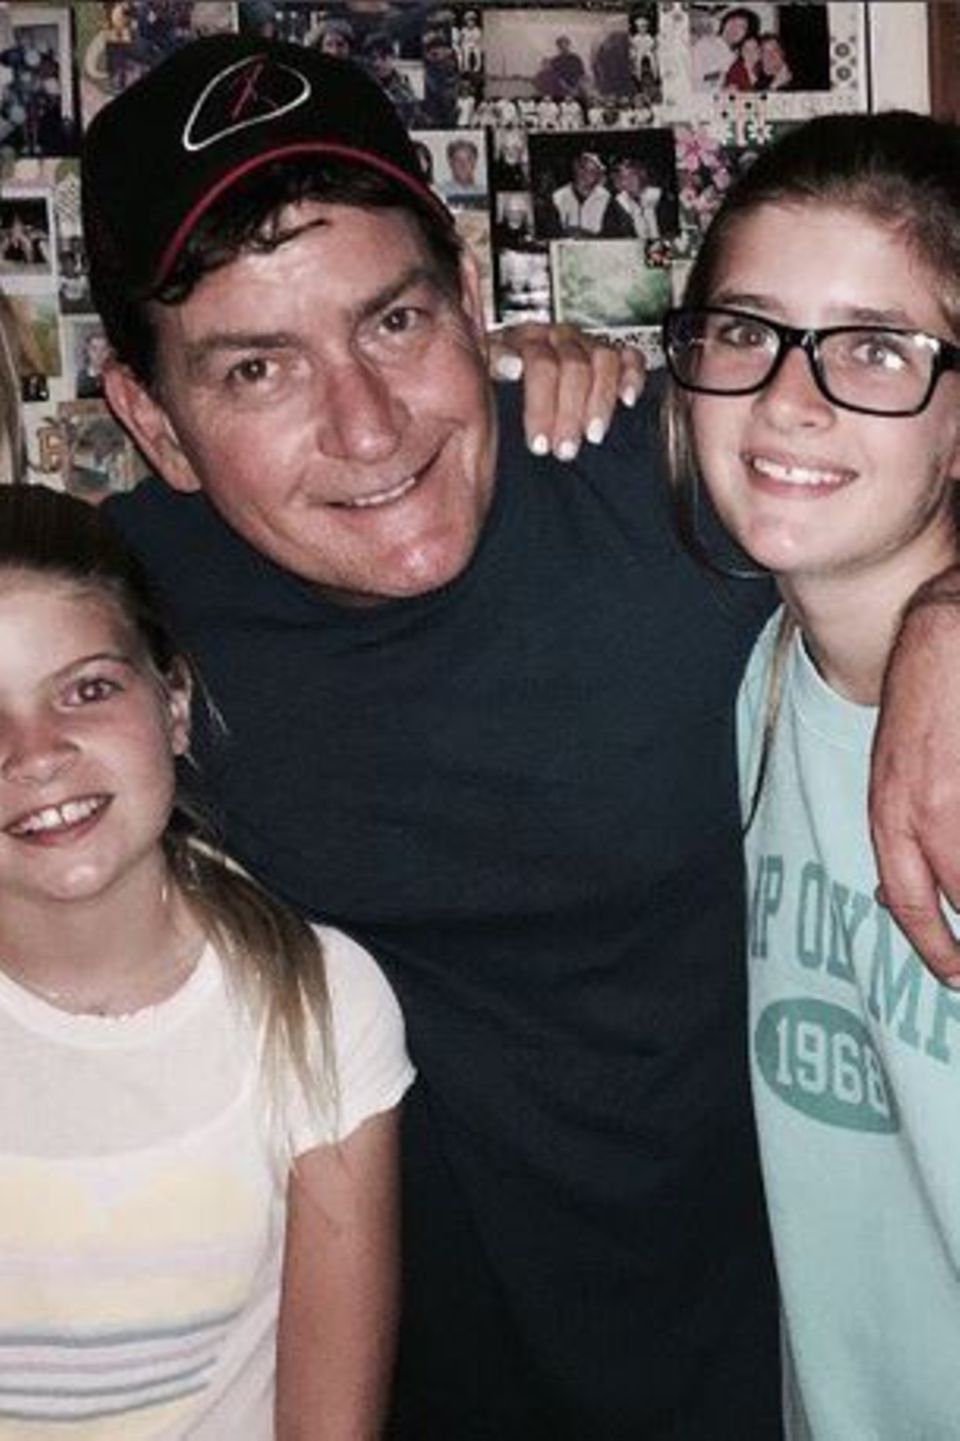 Gute Zeiten: Charlie Sheen postet dieses bezaubernde Foto mit seinen zwei Töchtern Lola Rose und Sam Sheen und Denise Richards, seiner Ex-Frau.